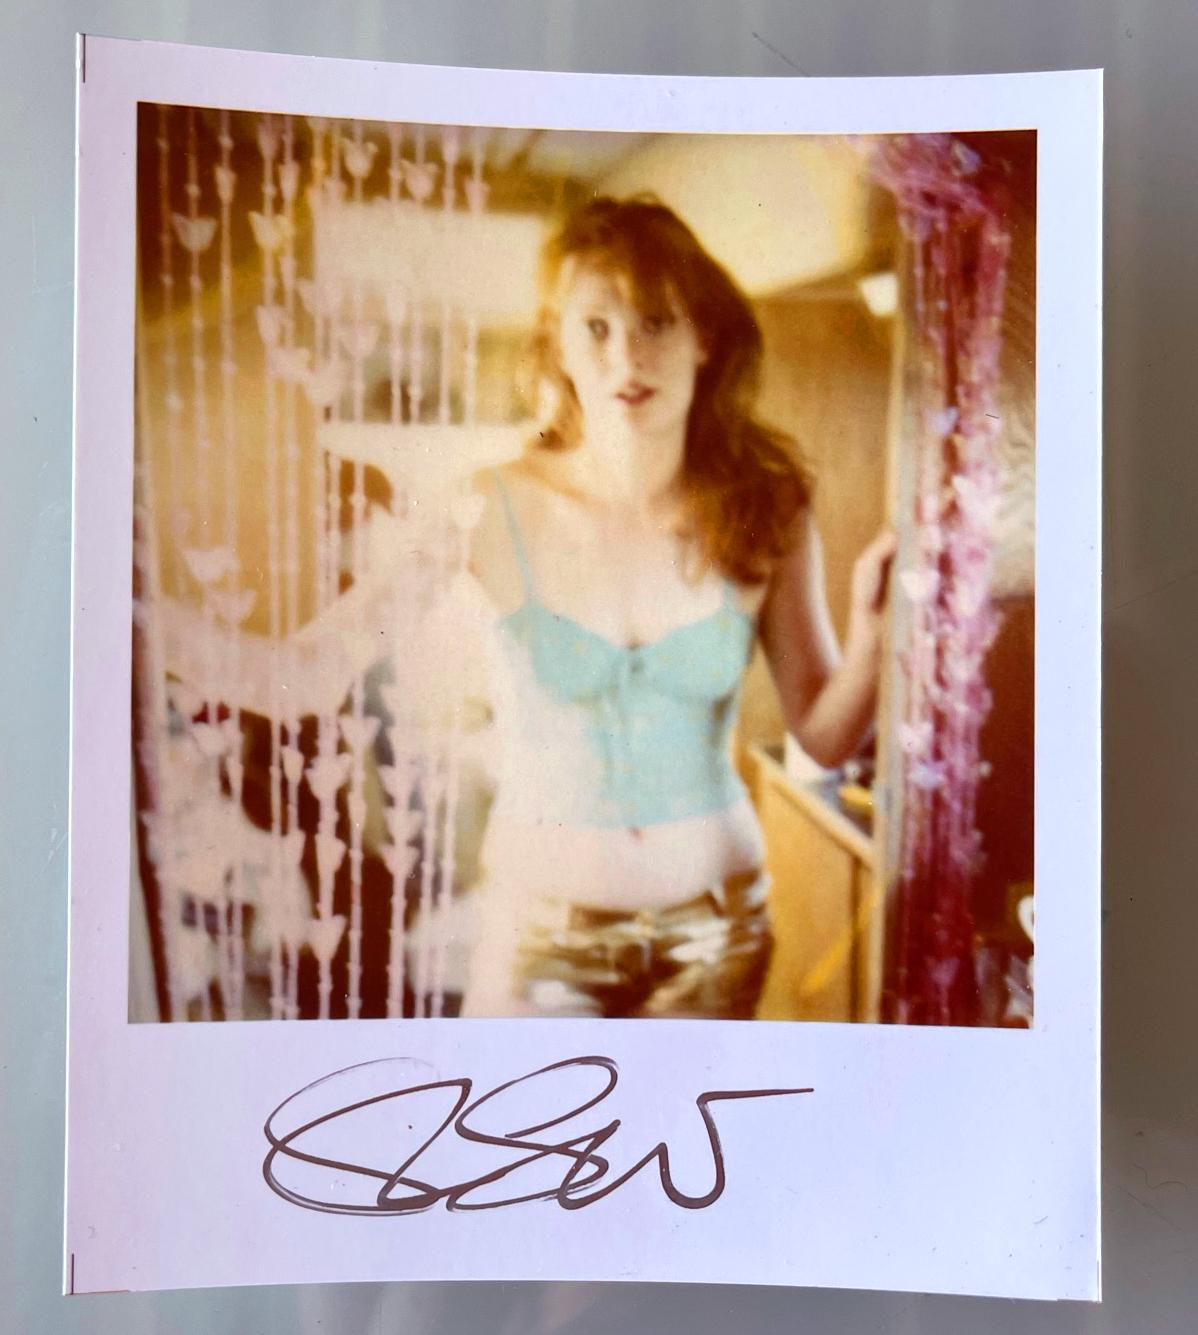 Stefanie Schneiders Mini
Daisy im Trailer (Bis dass der Tod uns scheidet)

vorne signiert, nicht montiert. 
Digitale Farbfotografien auf der Grundlage eines Polaroids. 

Offene Editionen in Polaroidgröße 1999-2013
10,7 x 8,8cm (Bild